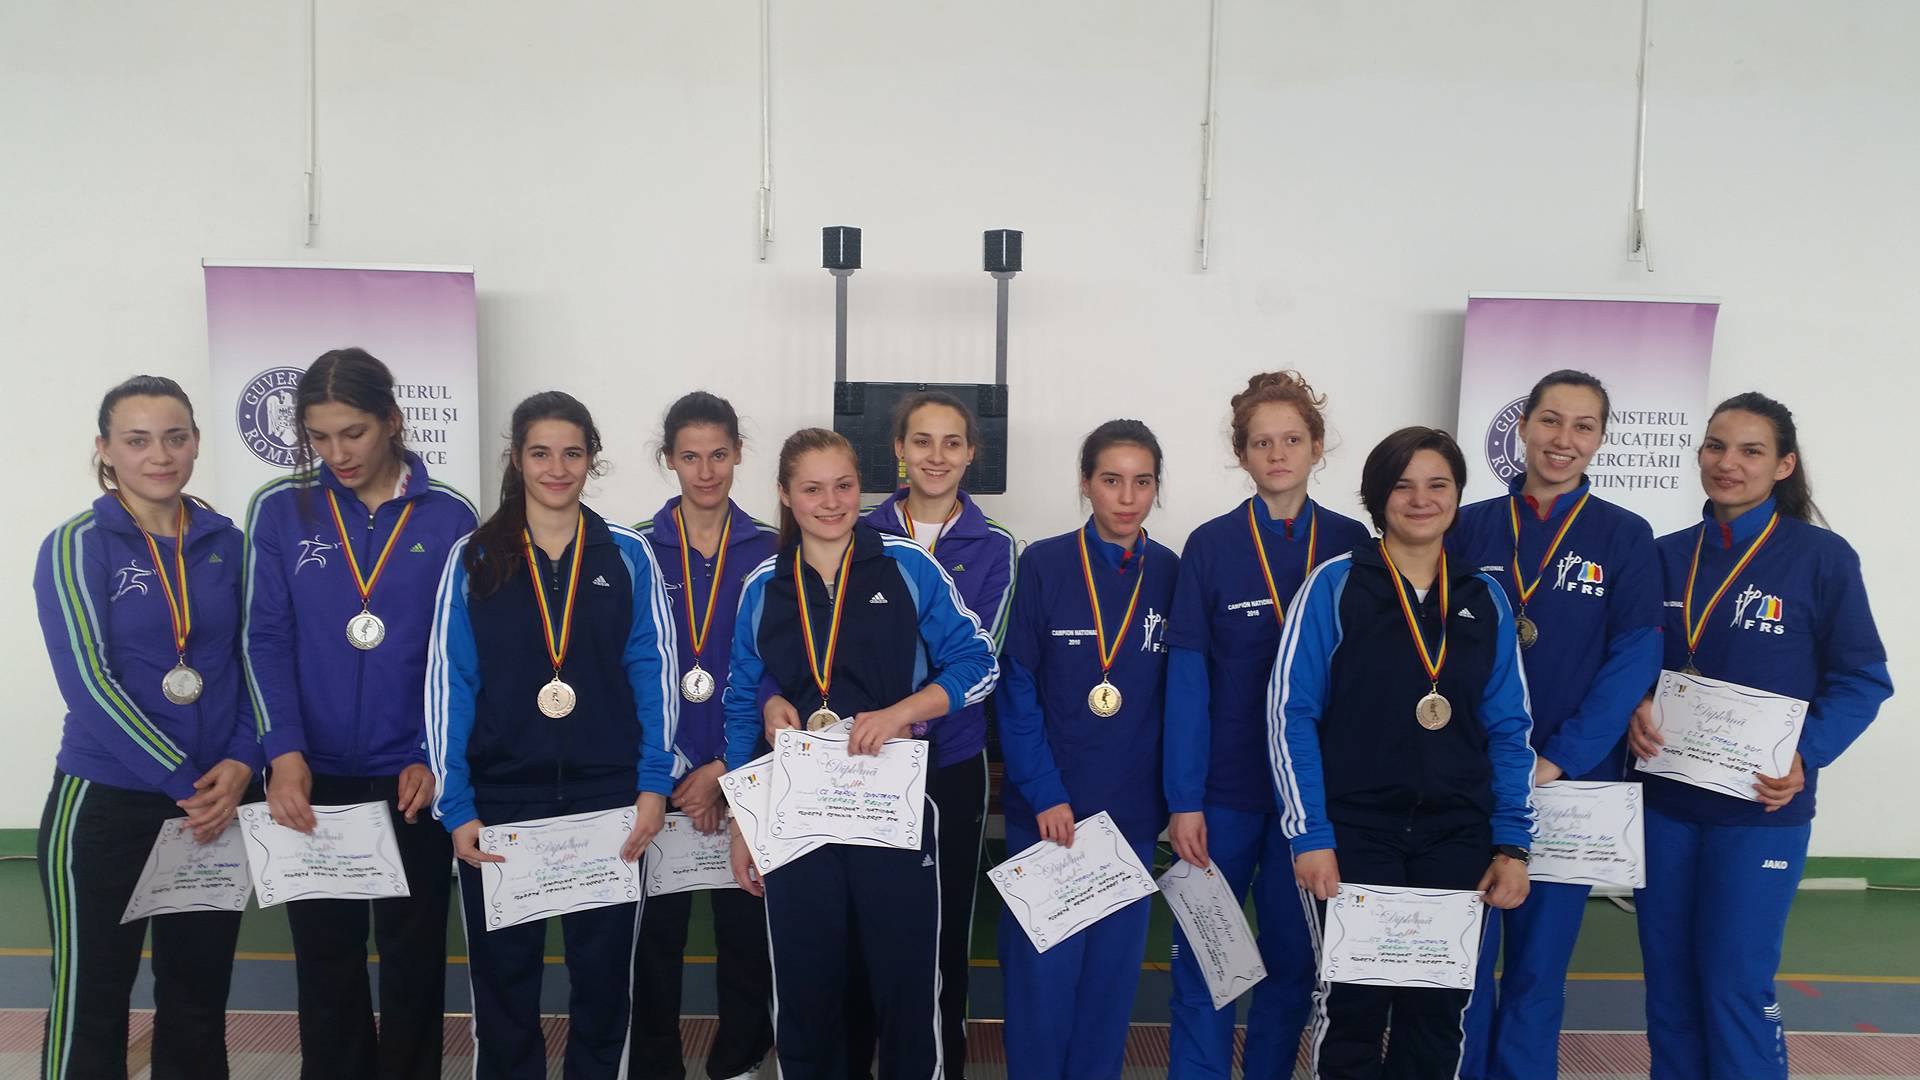 CSA Steaua a câștigat medaliile de aur la Campionatul Național de floretă pentru tineret de la Timișoara, în proba feminină pe echipe